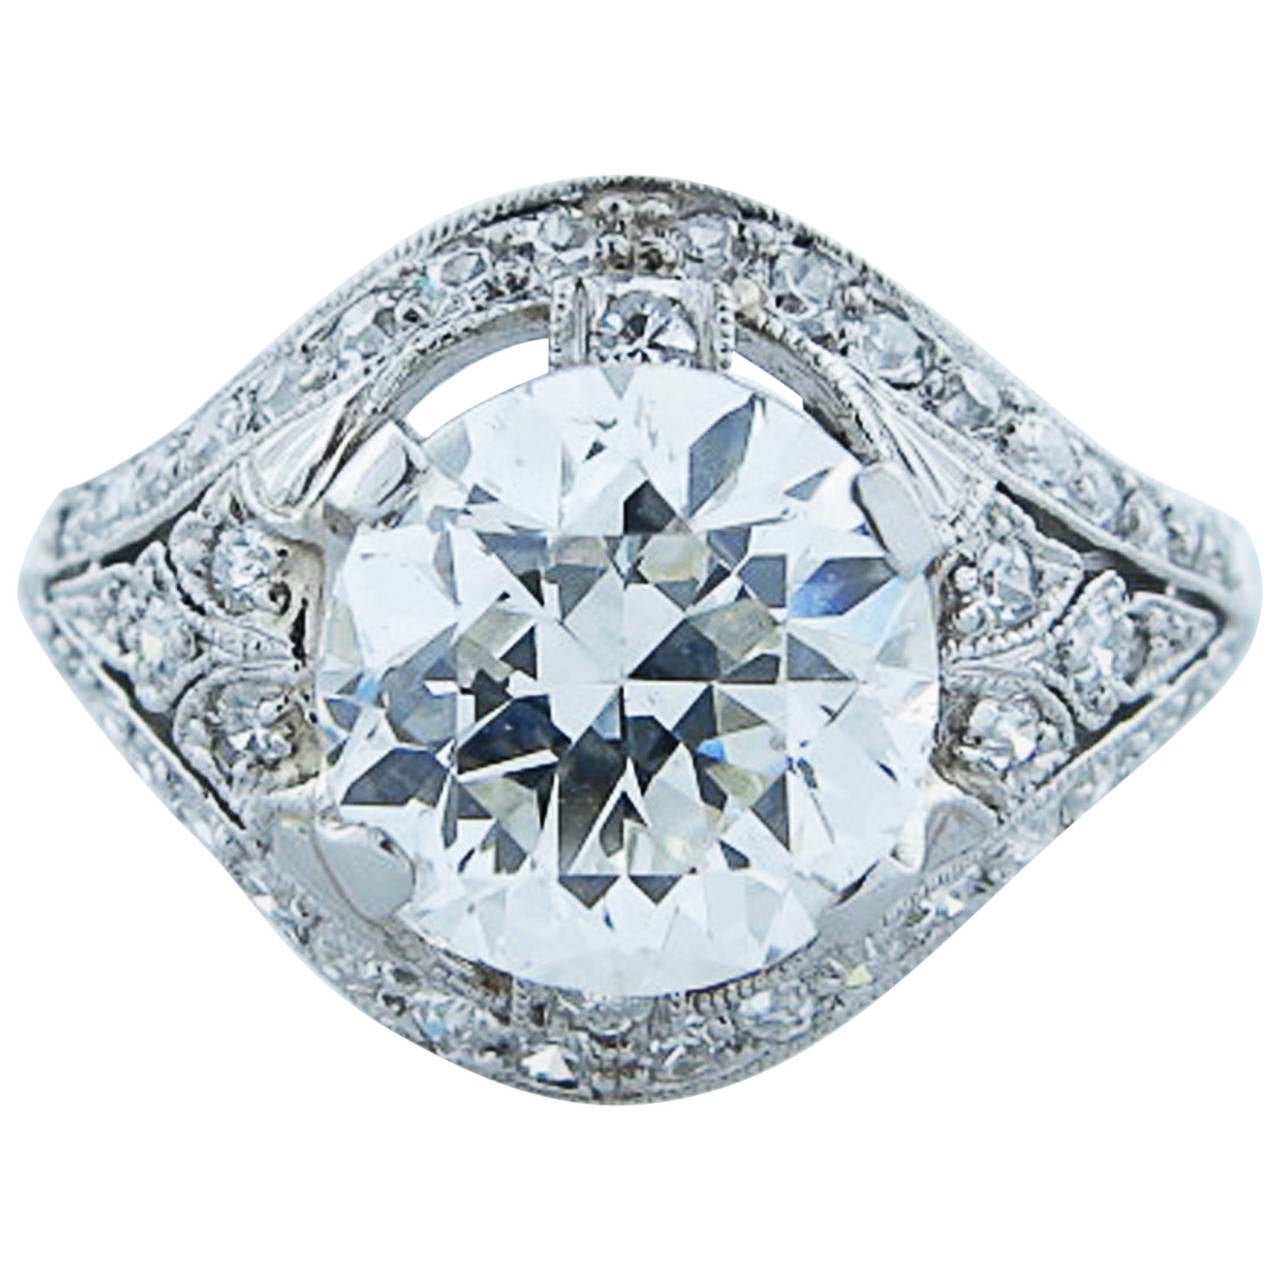  Glorious Marcus Art Deco 2.32 Carat Diamond Platinum Engagement Ring`